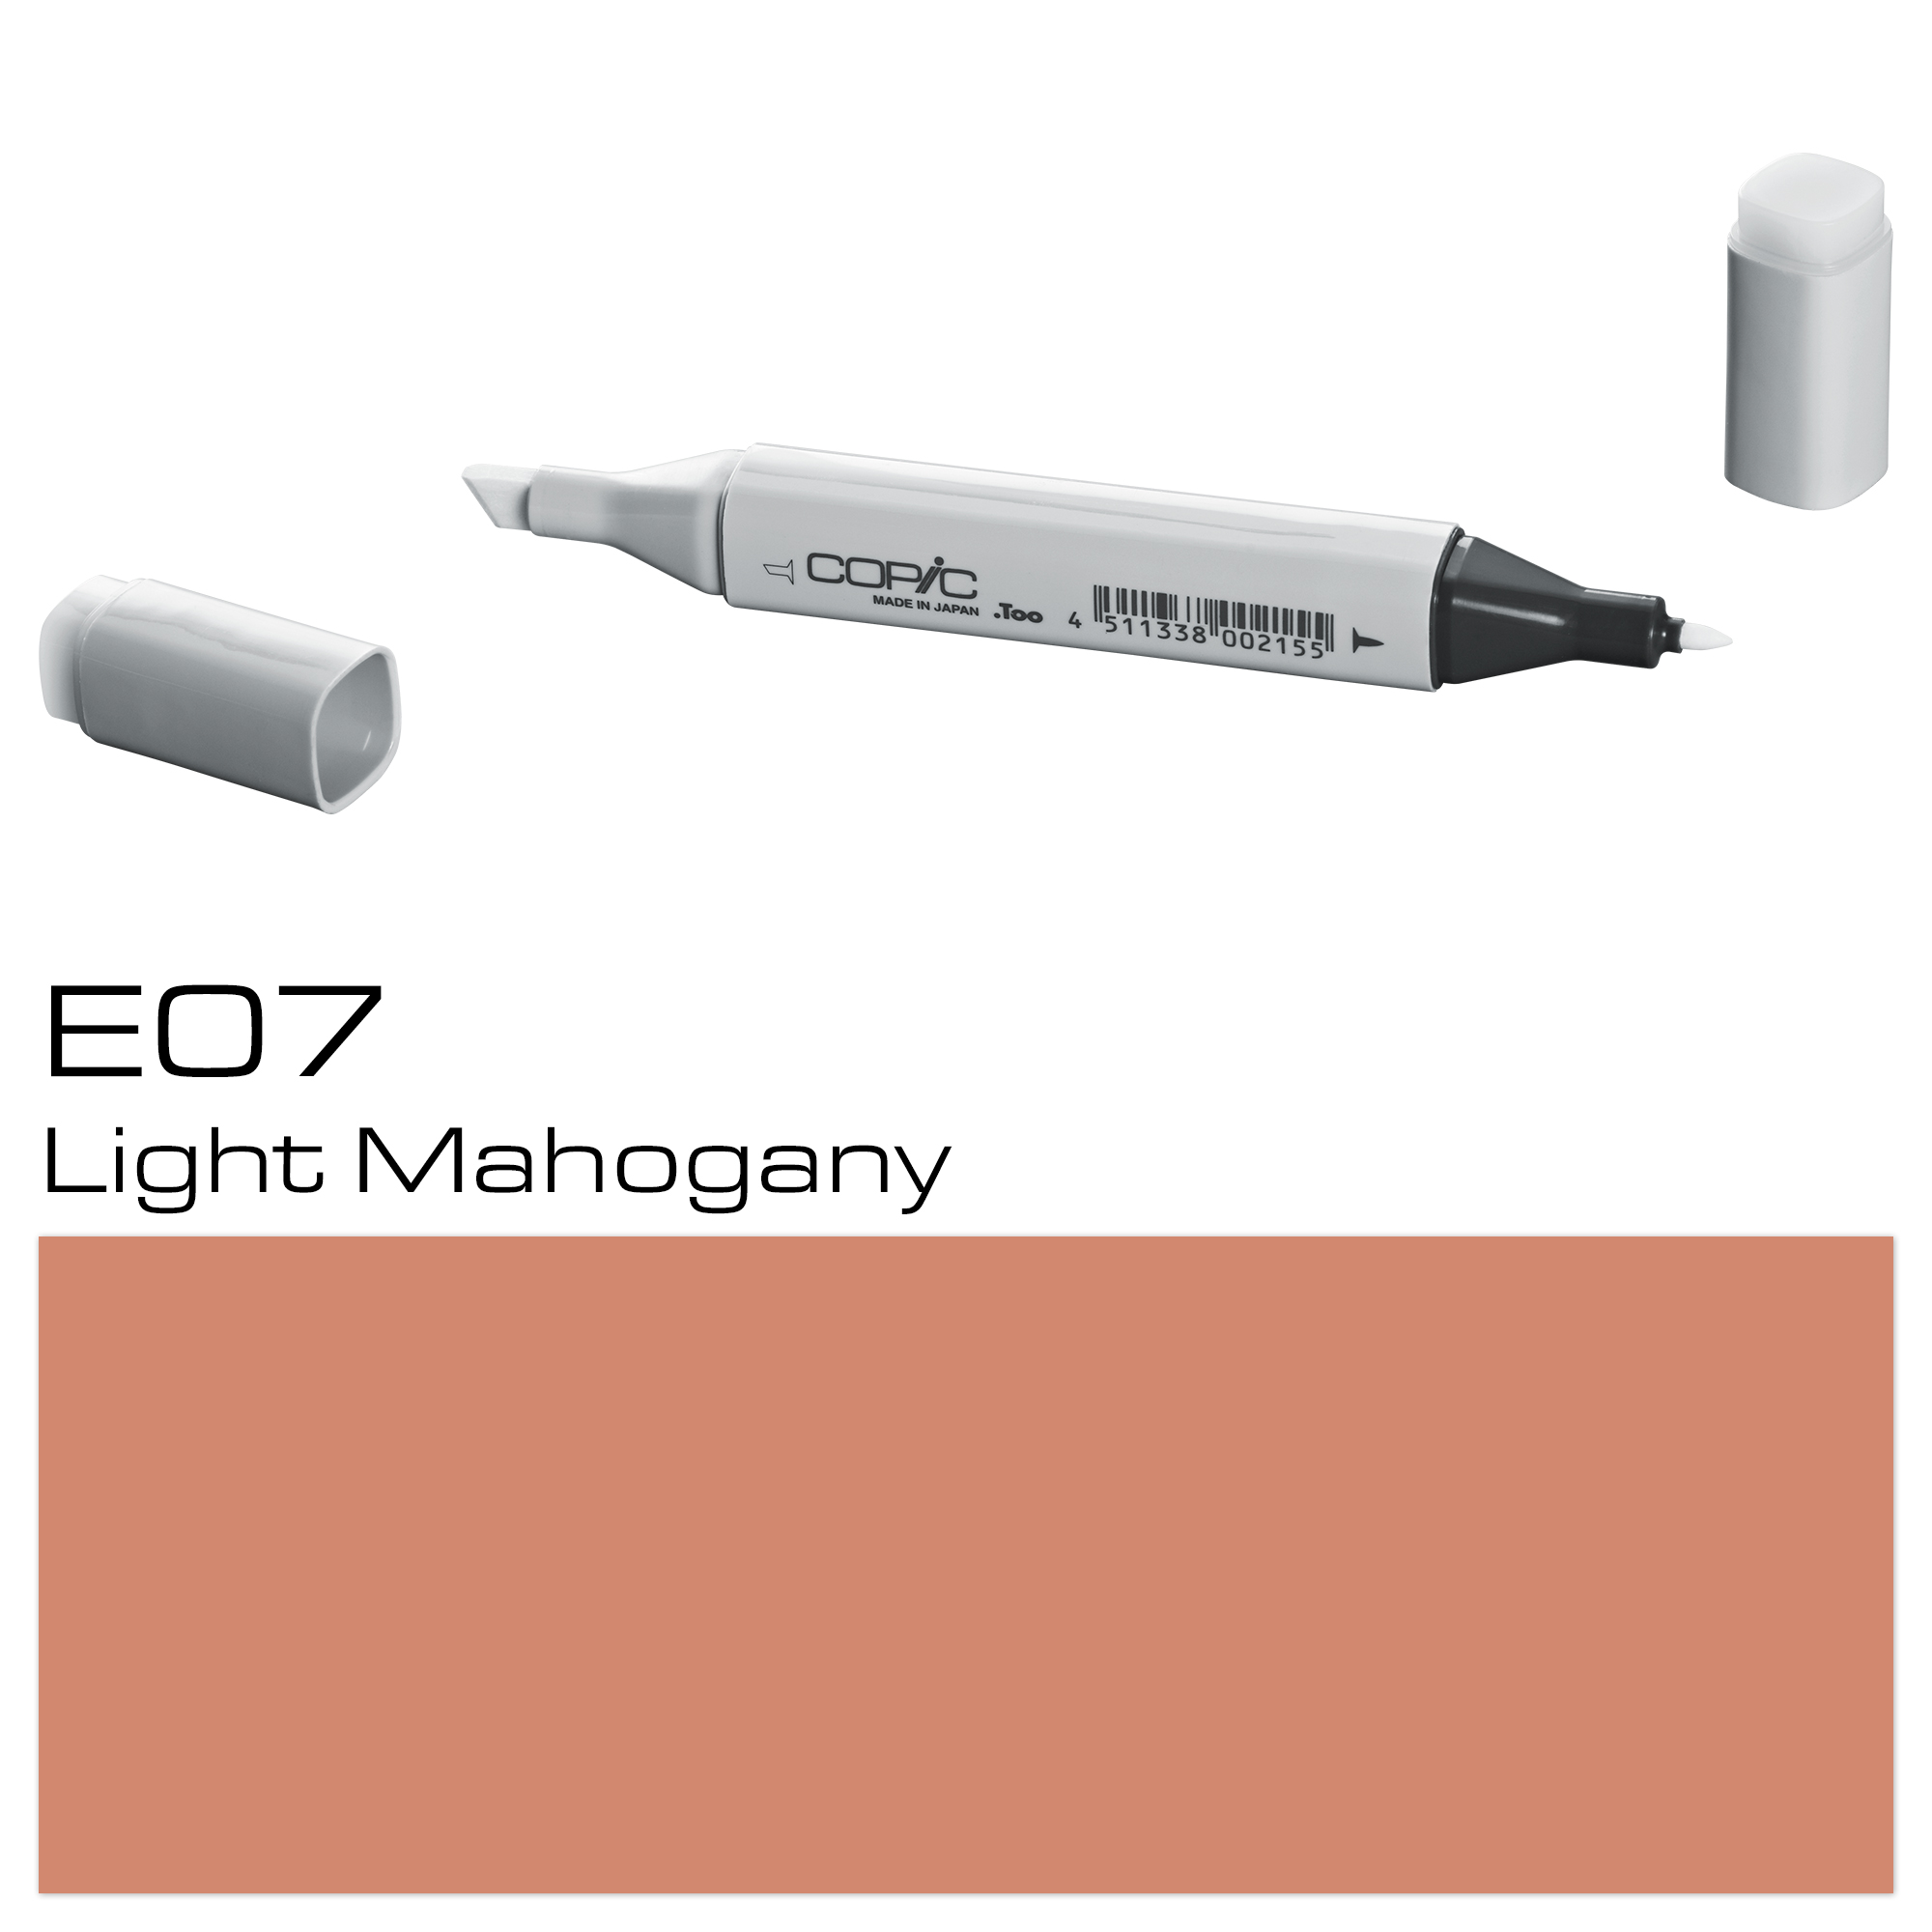 COPIC MARKER LIGHT MAHOGANY E07